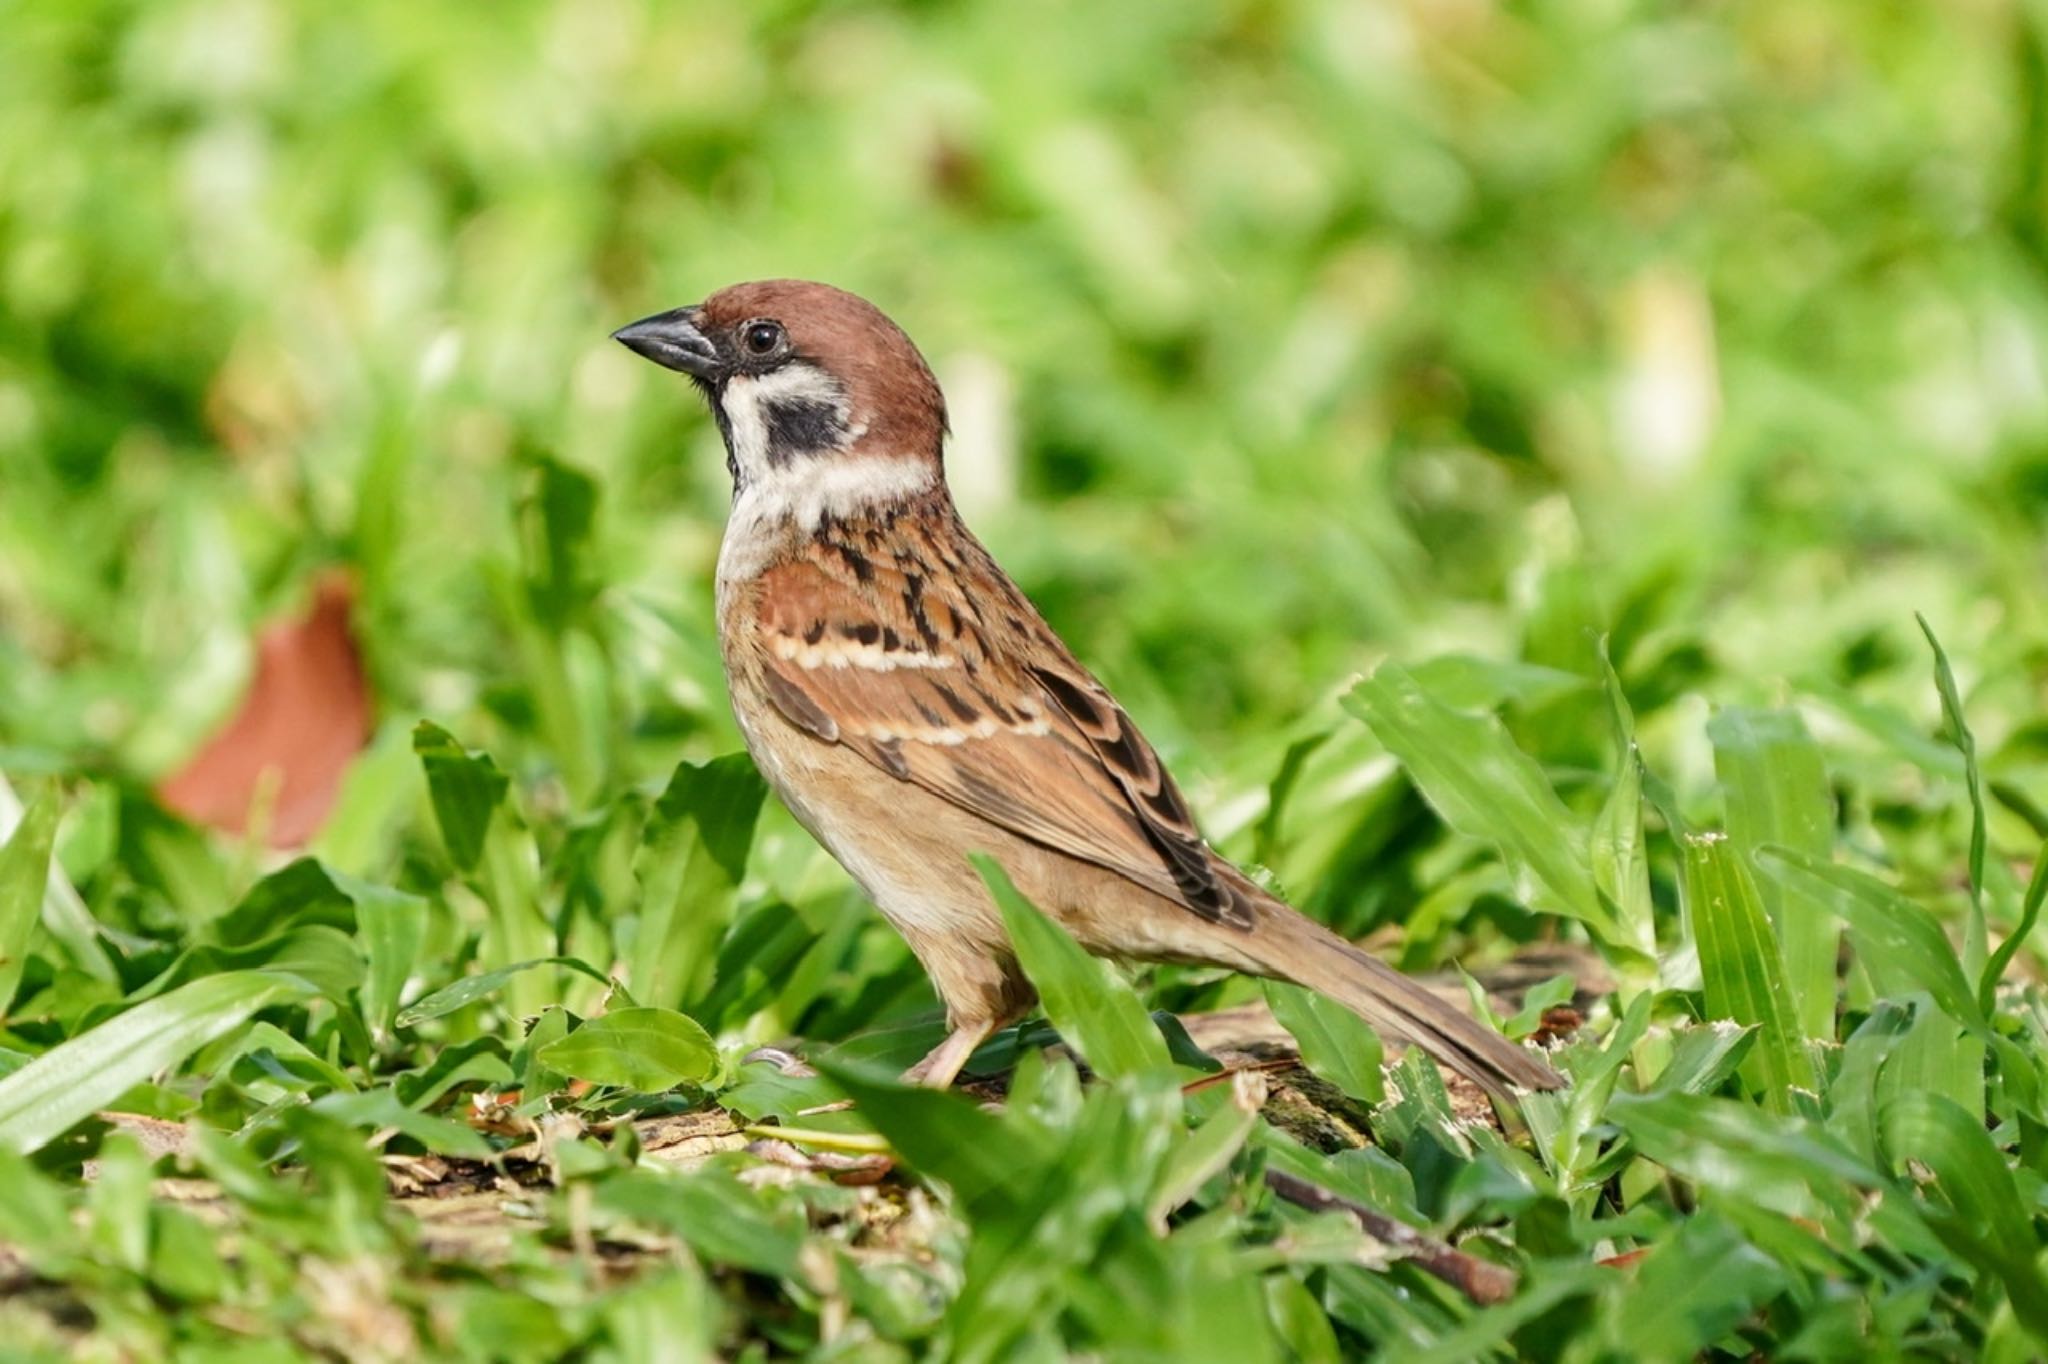 Photo of Eurasian Tree Sparrow at Bishan - Ang Mo Kio Park by T K